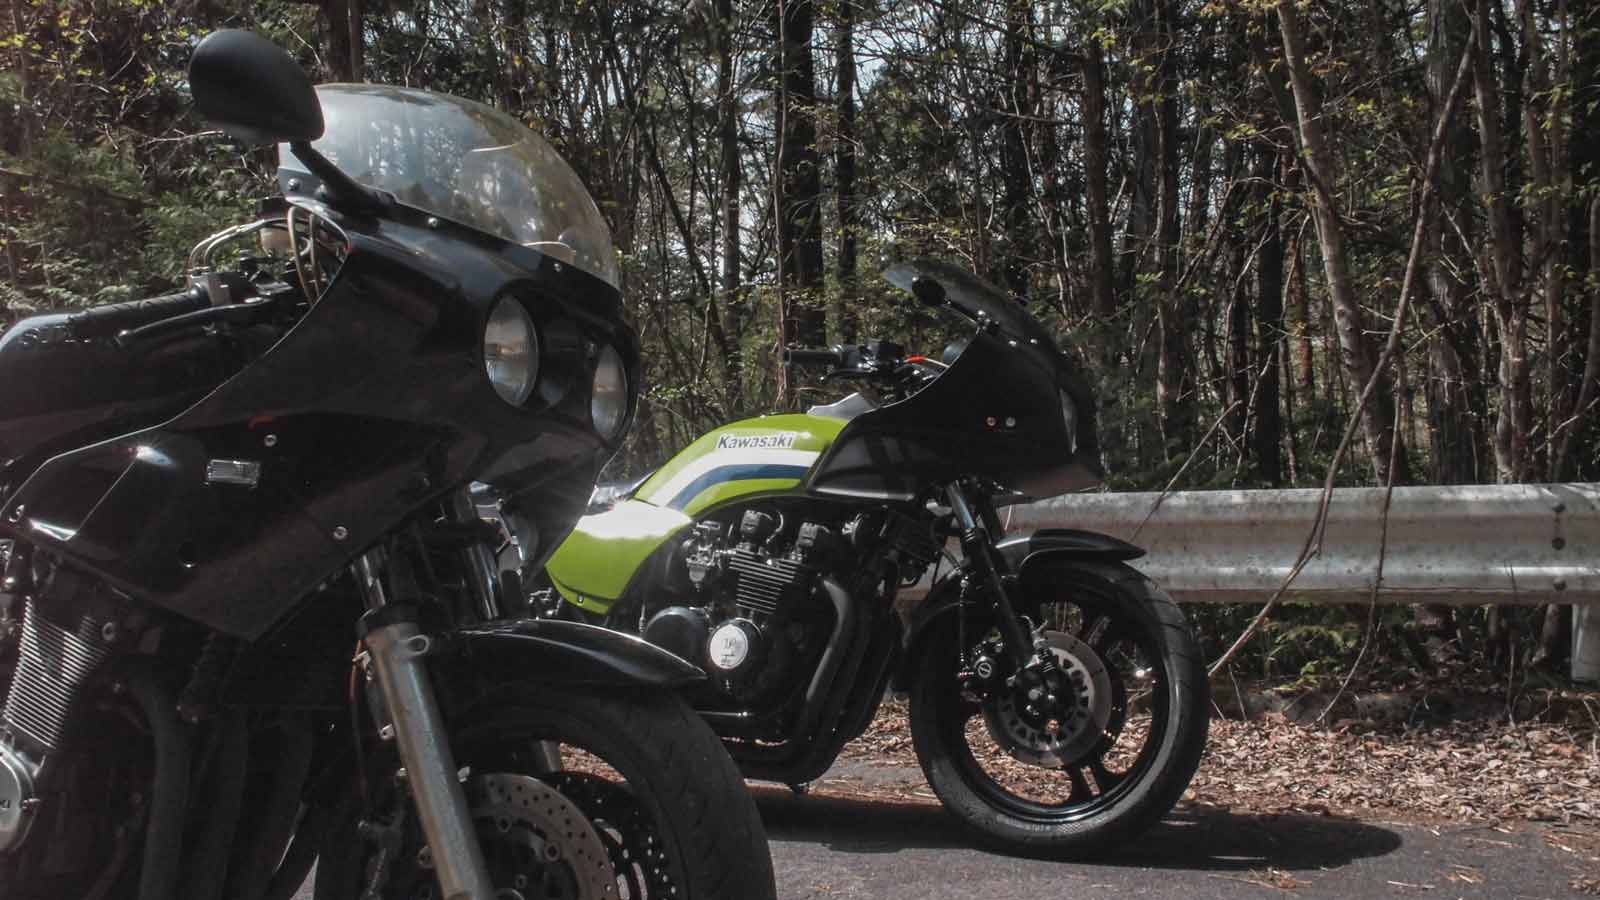 活動報告 GS1200SS GPZ750 ツーリング モーターサイクル バイク ダム touring motorcycle bike